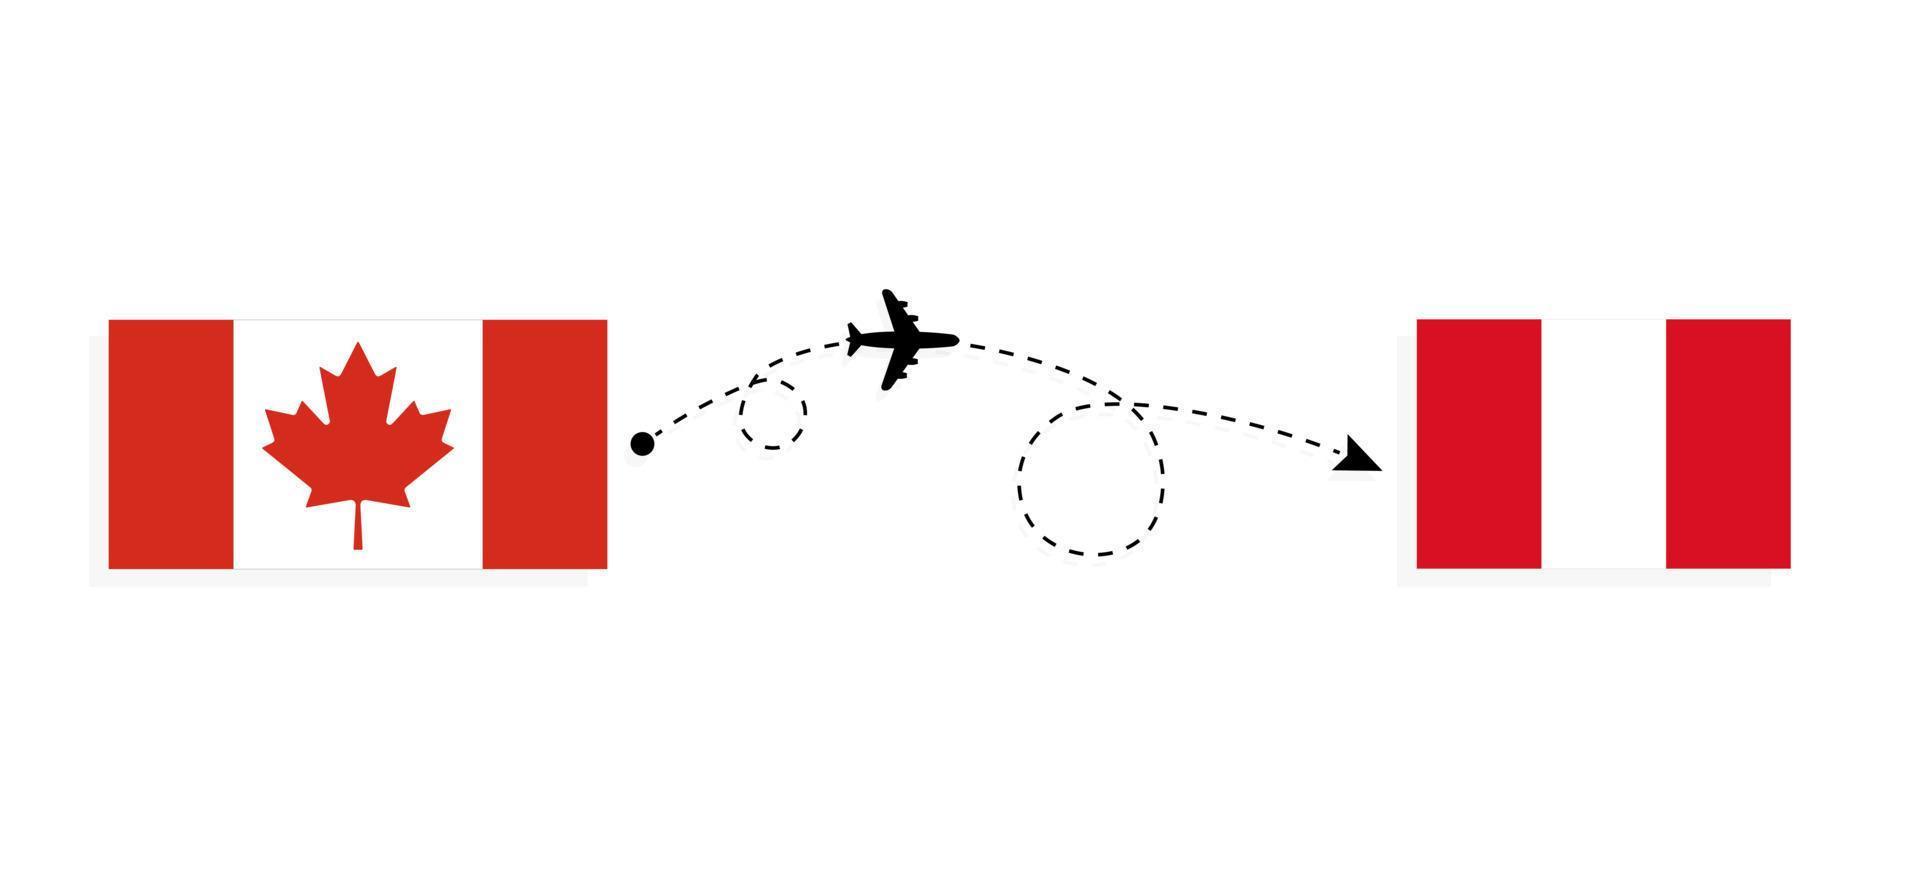 flyg och resor från Kanada till peru med passagerarflygplan vektor